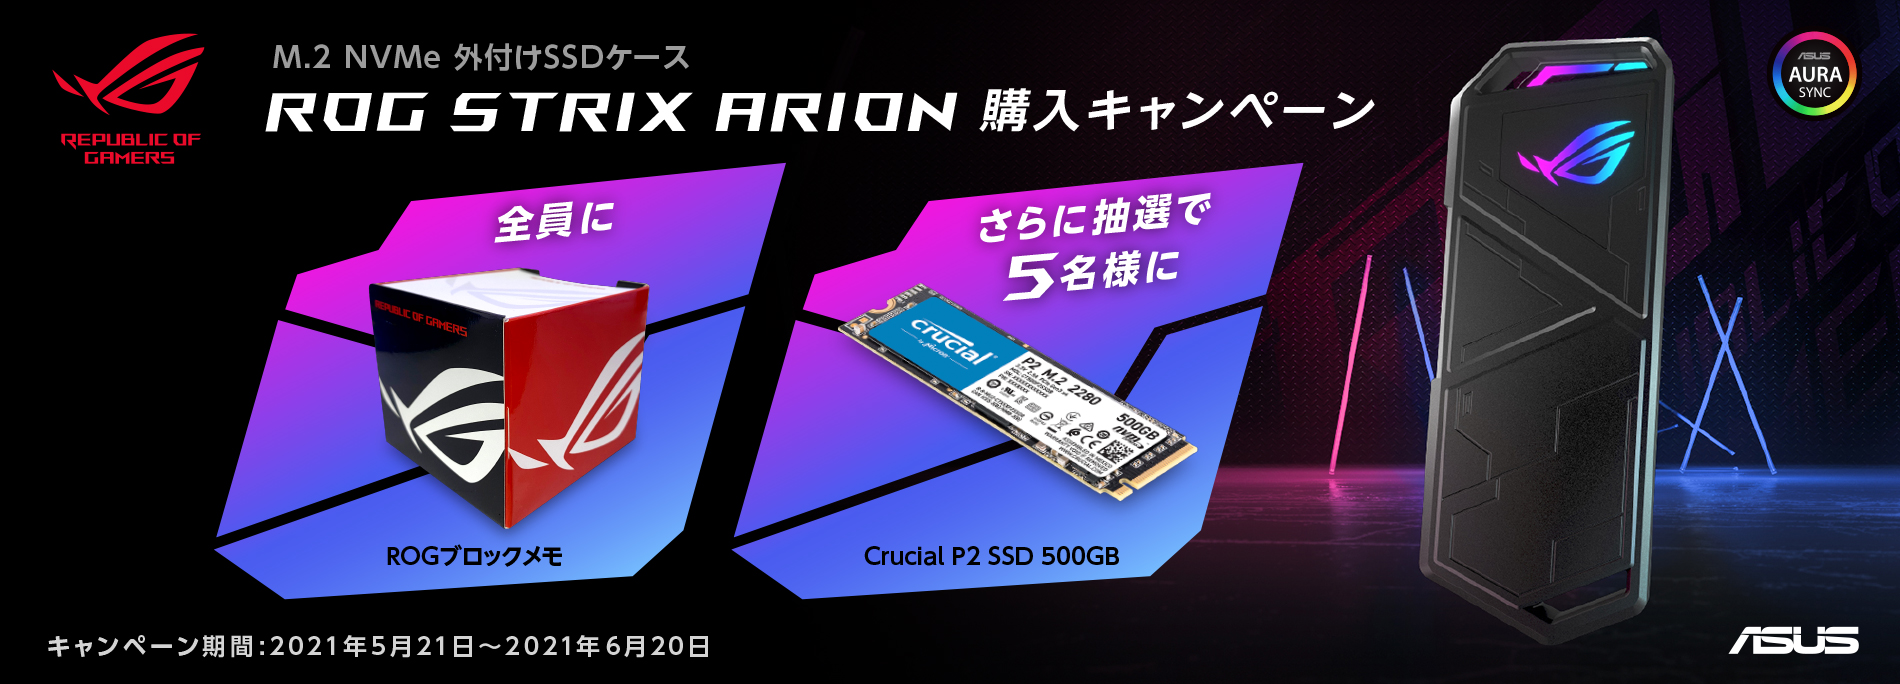 M.2 NVMe外付けSSDケース「ROG STRIX ARION」購入キャンペーン